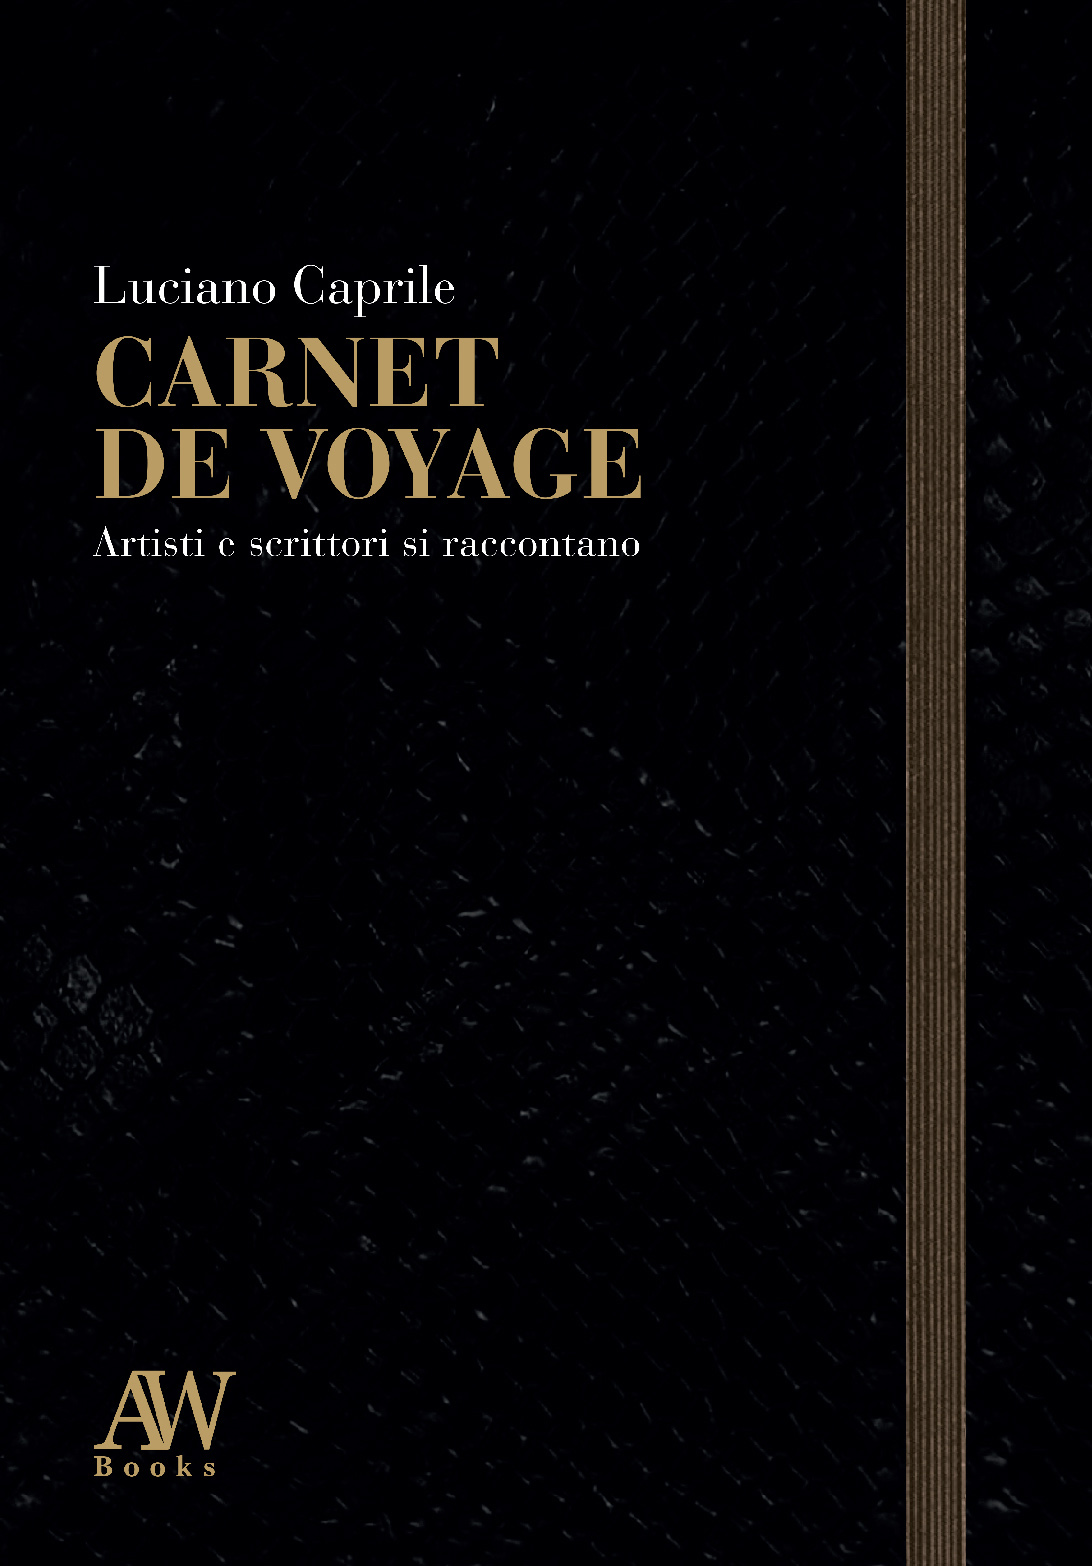 Carnet de voyage - Luciano Caprile